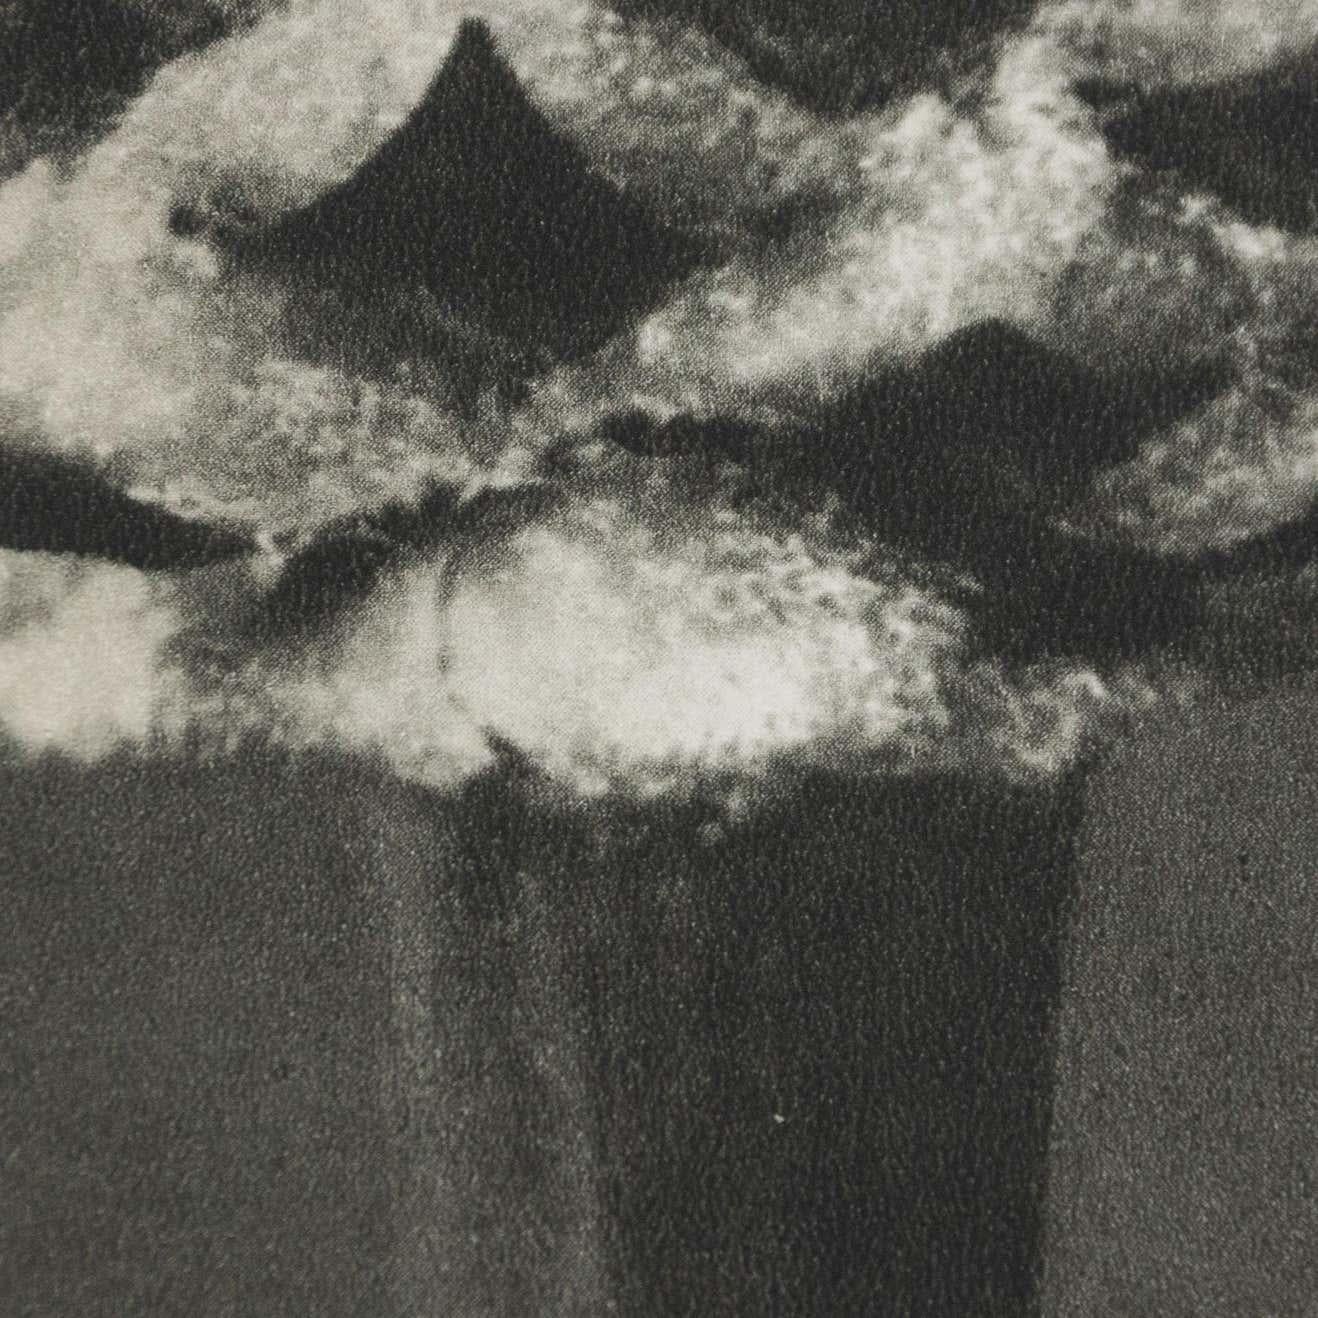 Karl Blossfeldt Black White Flower Photogravure Botanic Photography, 1942 For Sale 8